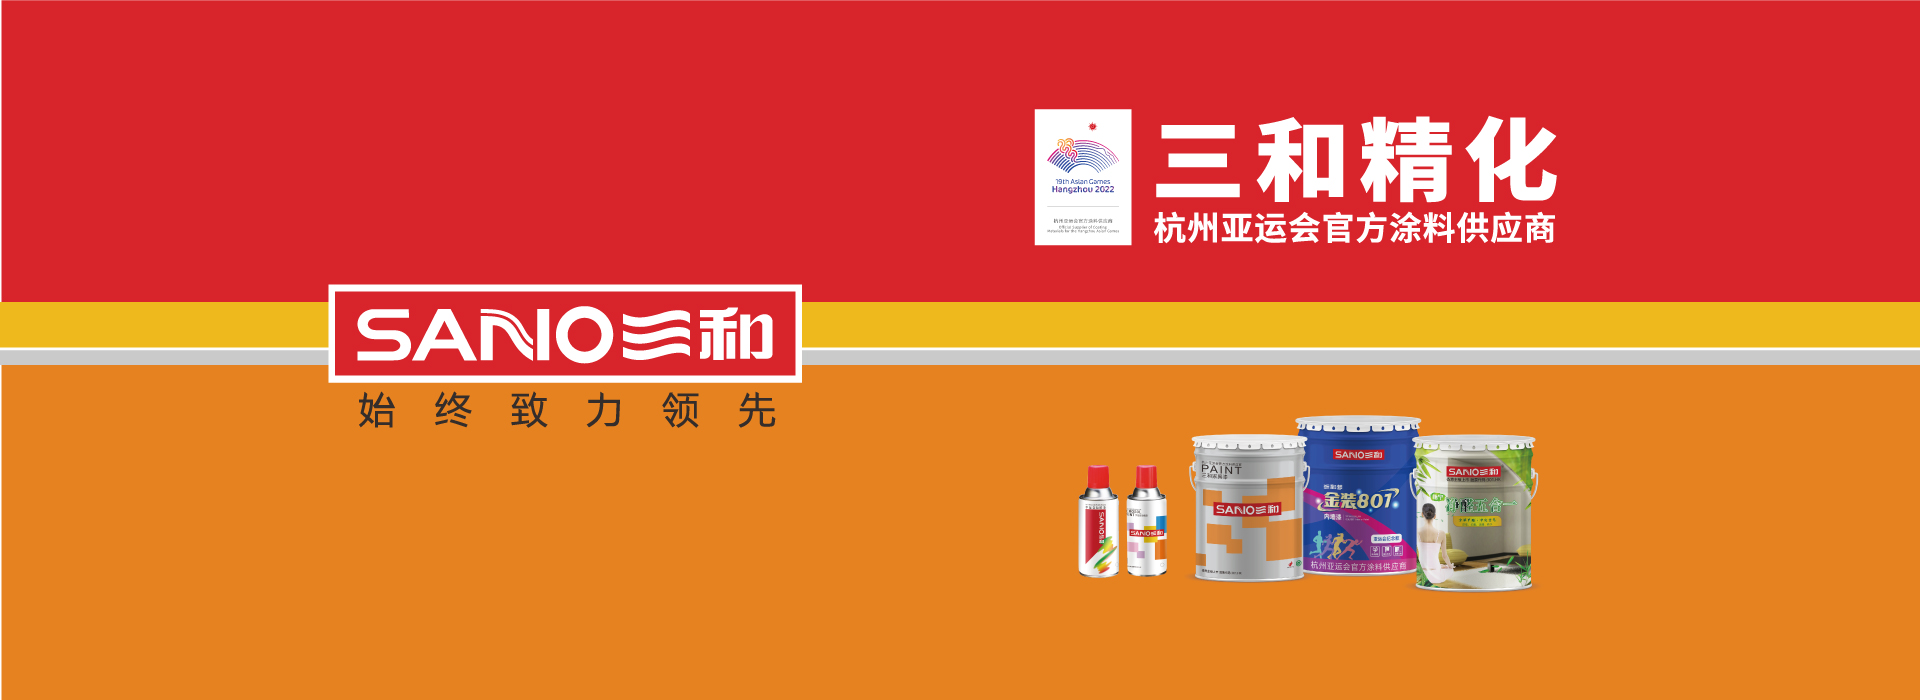 三和精化成为杭州亚运会官方涂料供应商